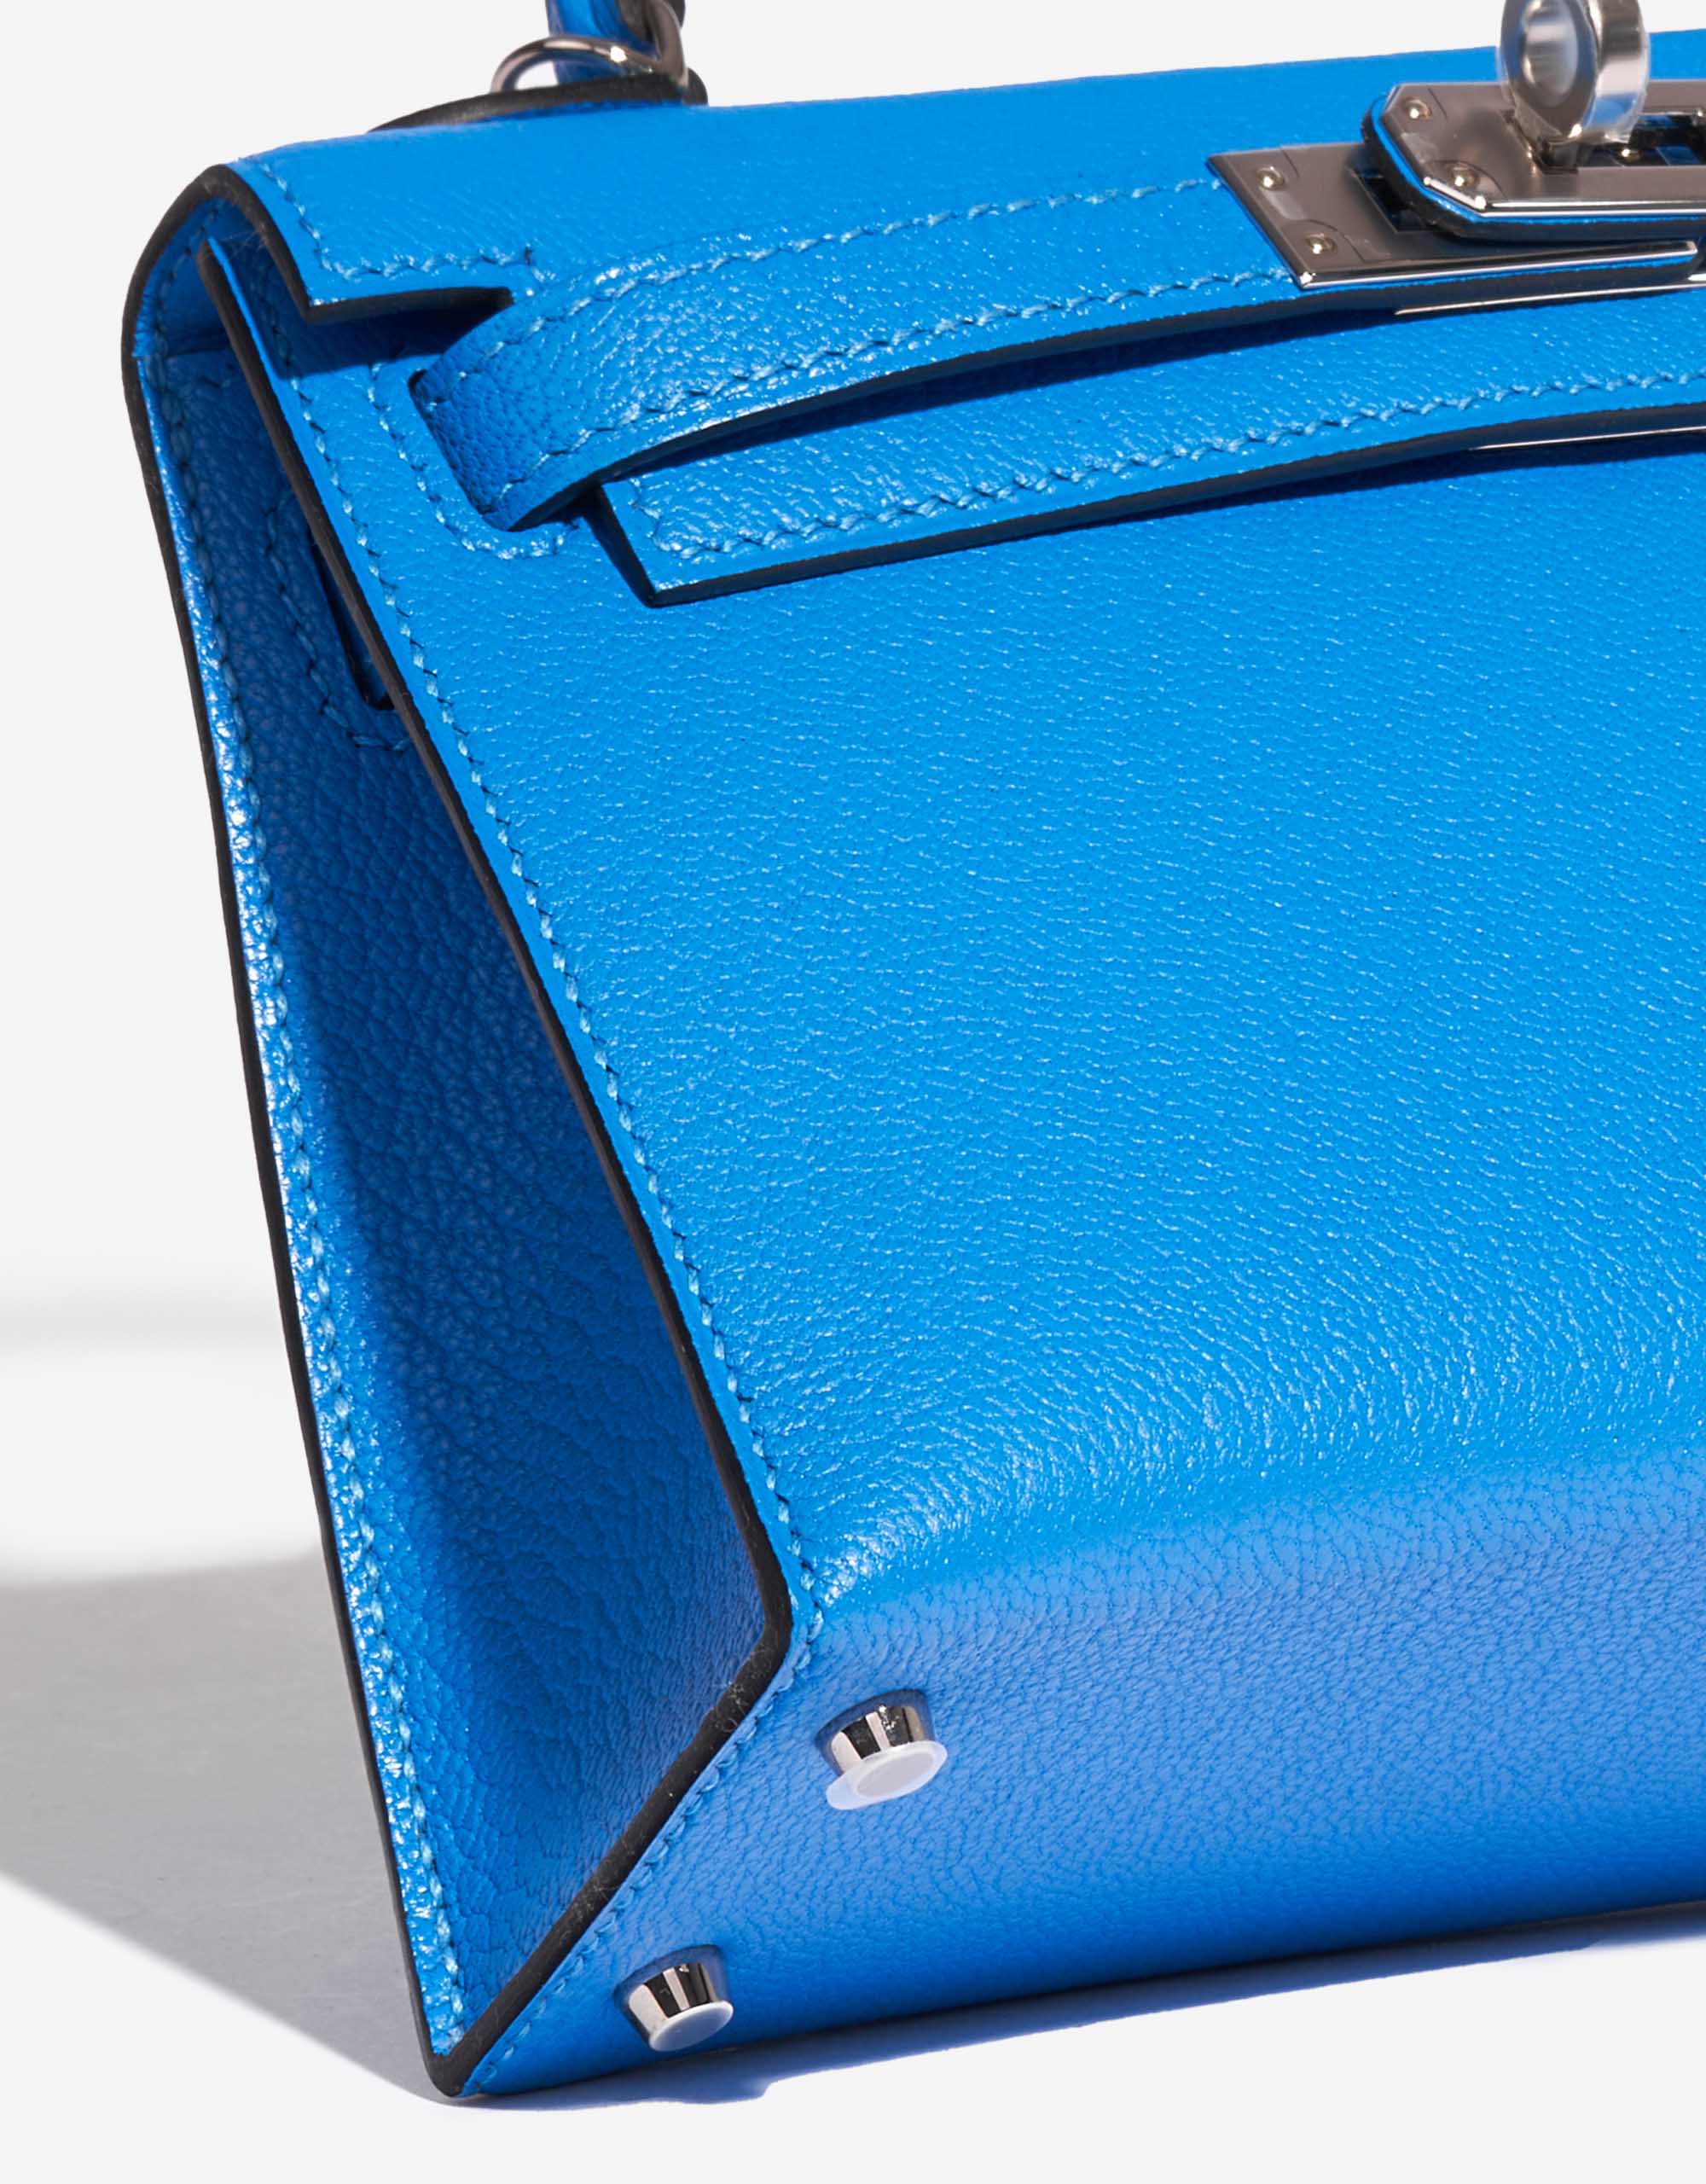 Gebrauchte Hermès Tasche Kelly Mini Chèvre Mysore Blau Hydra Blau Detail | Verkaufen Sie Ihre Designer-Tasche auf Saclab.com